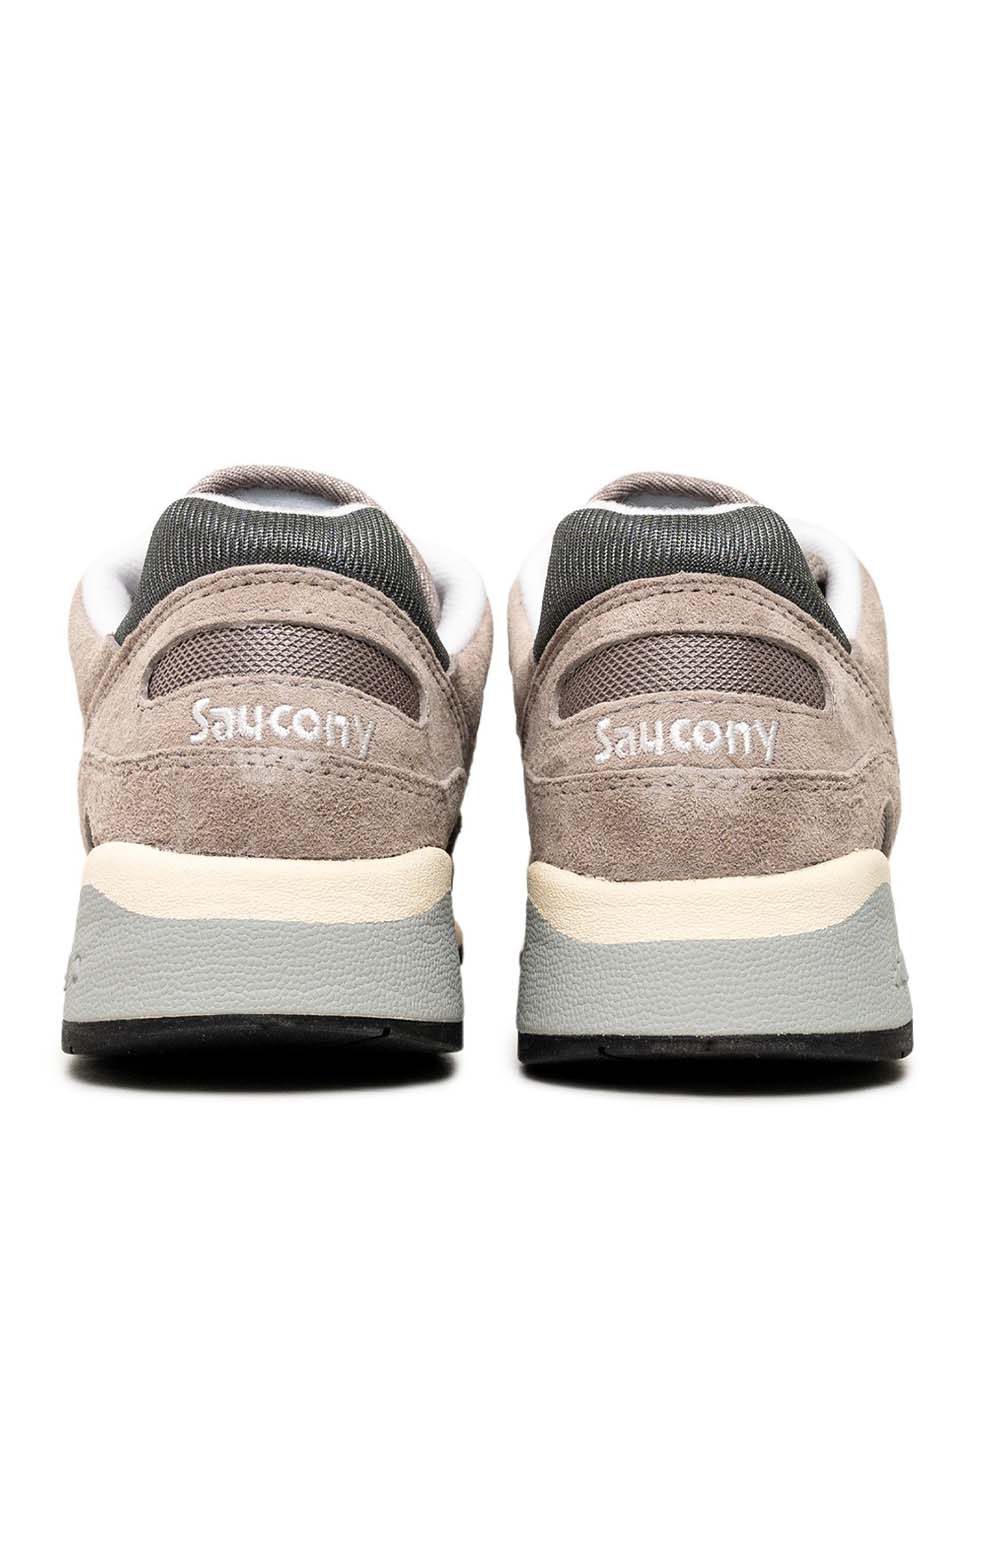 (S70441-46) Shadow 6000 Shoes - Grey/Grey